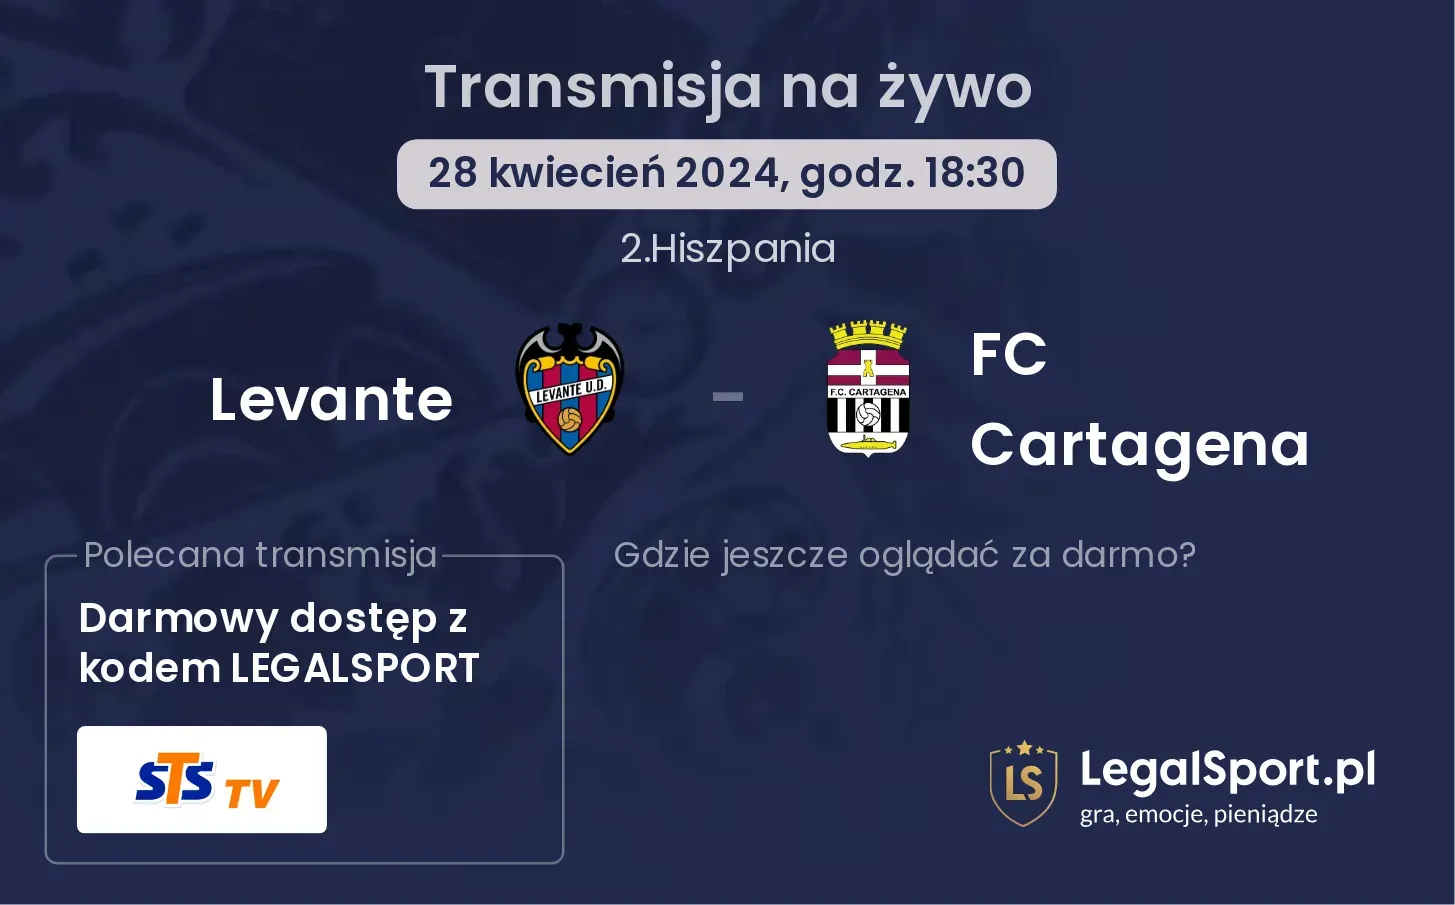 Levante - FC Cartagena transmisja na żywo